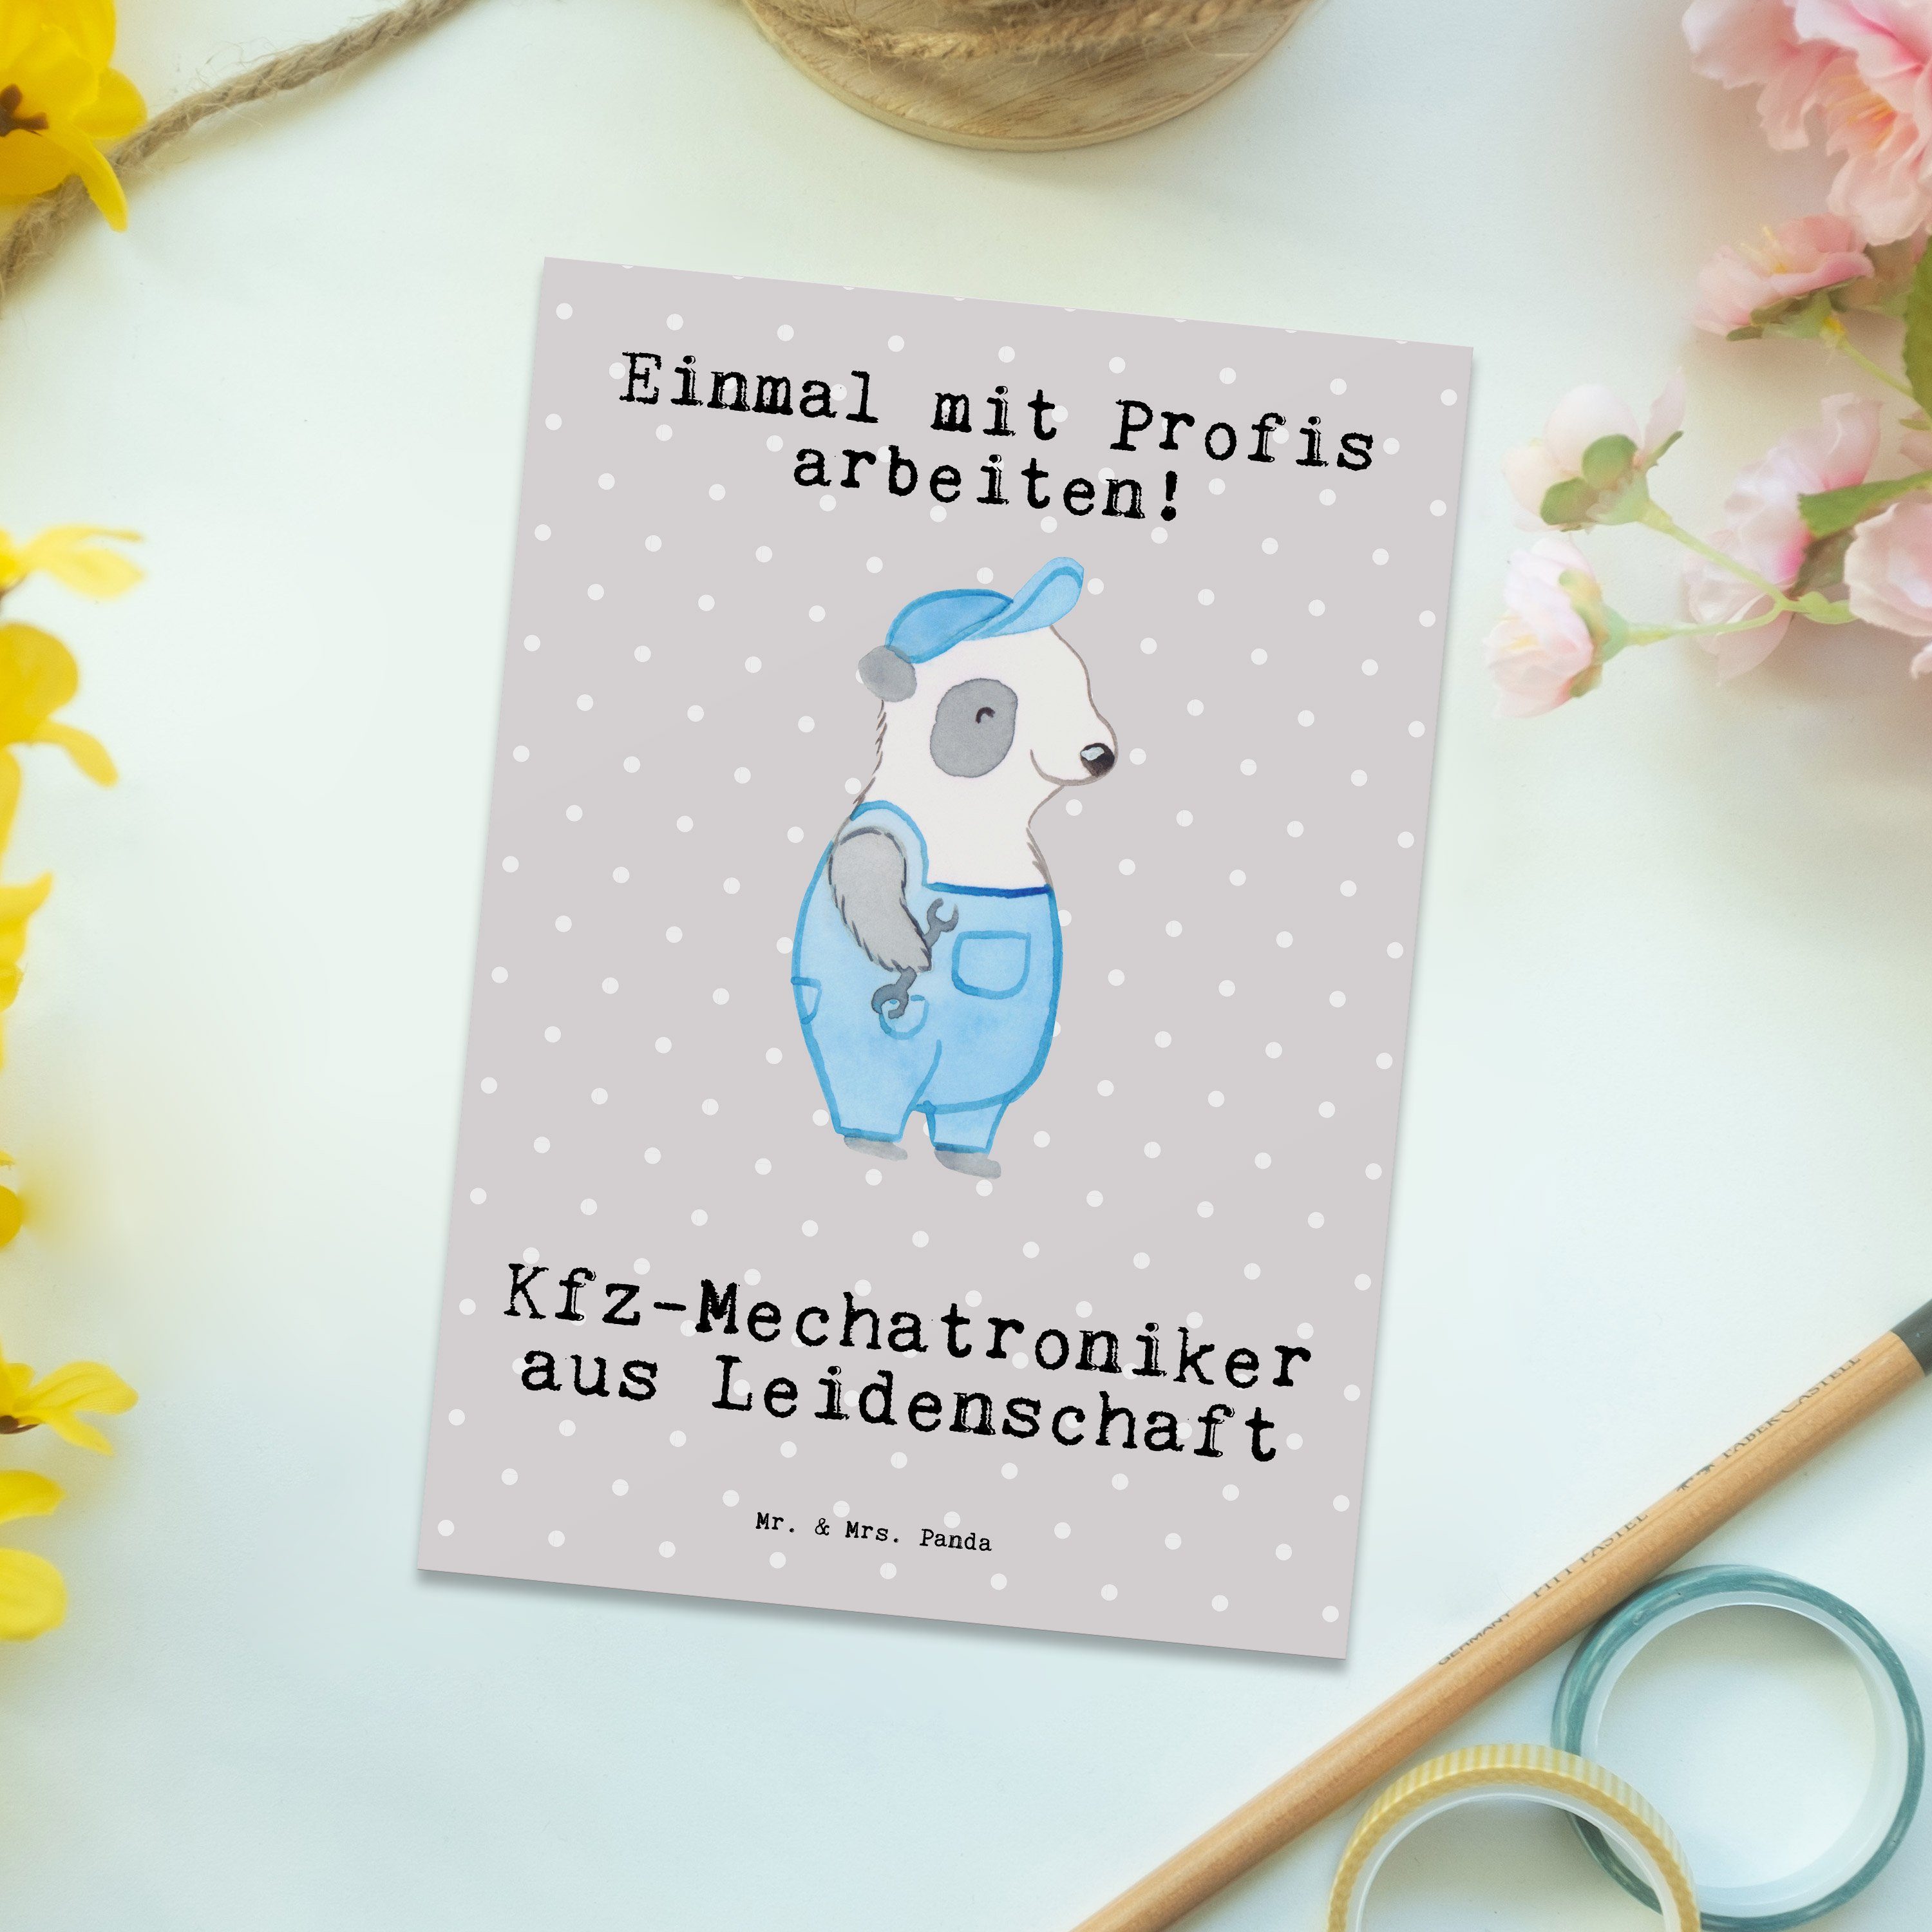 Mr. & Mrs. Panda Postkarte Kfz-Mechatroniker aus Leidenschaft - Grau Pastell - Geschenk, Geschen